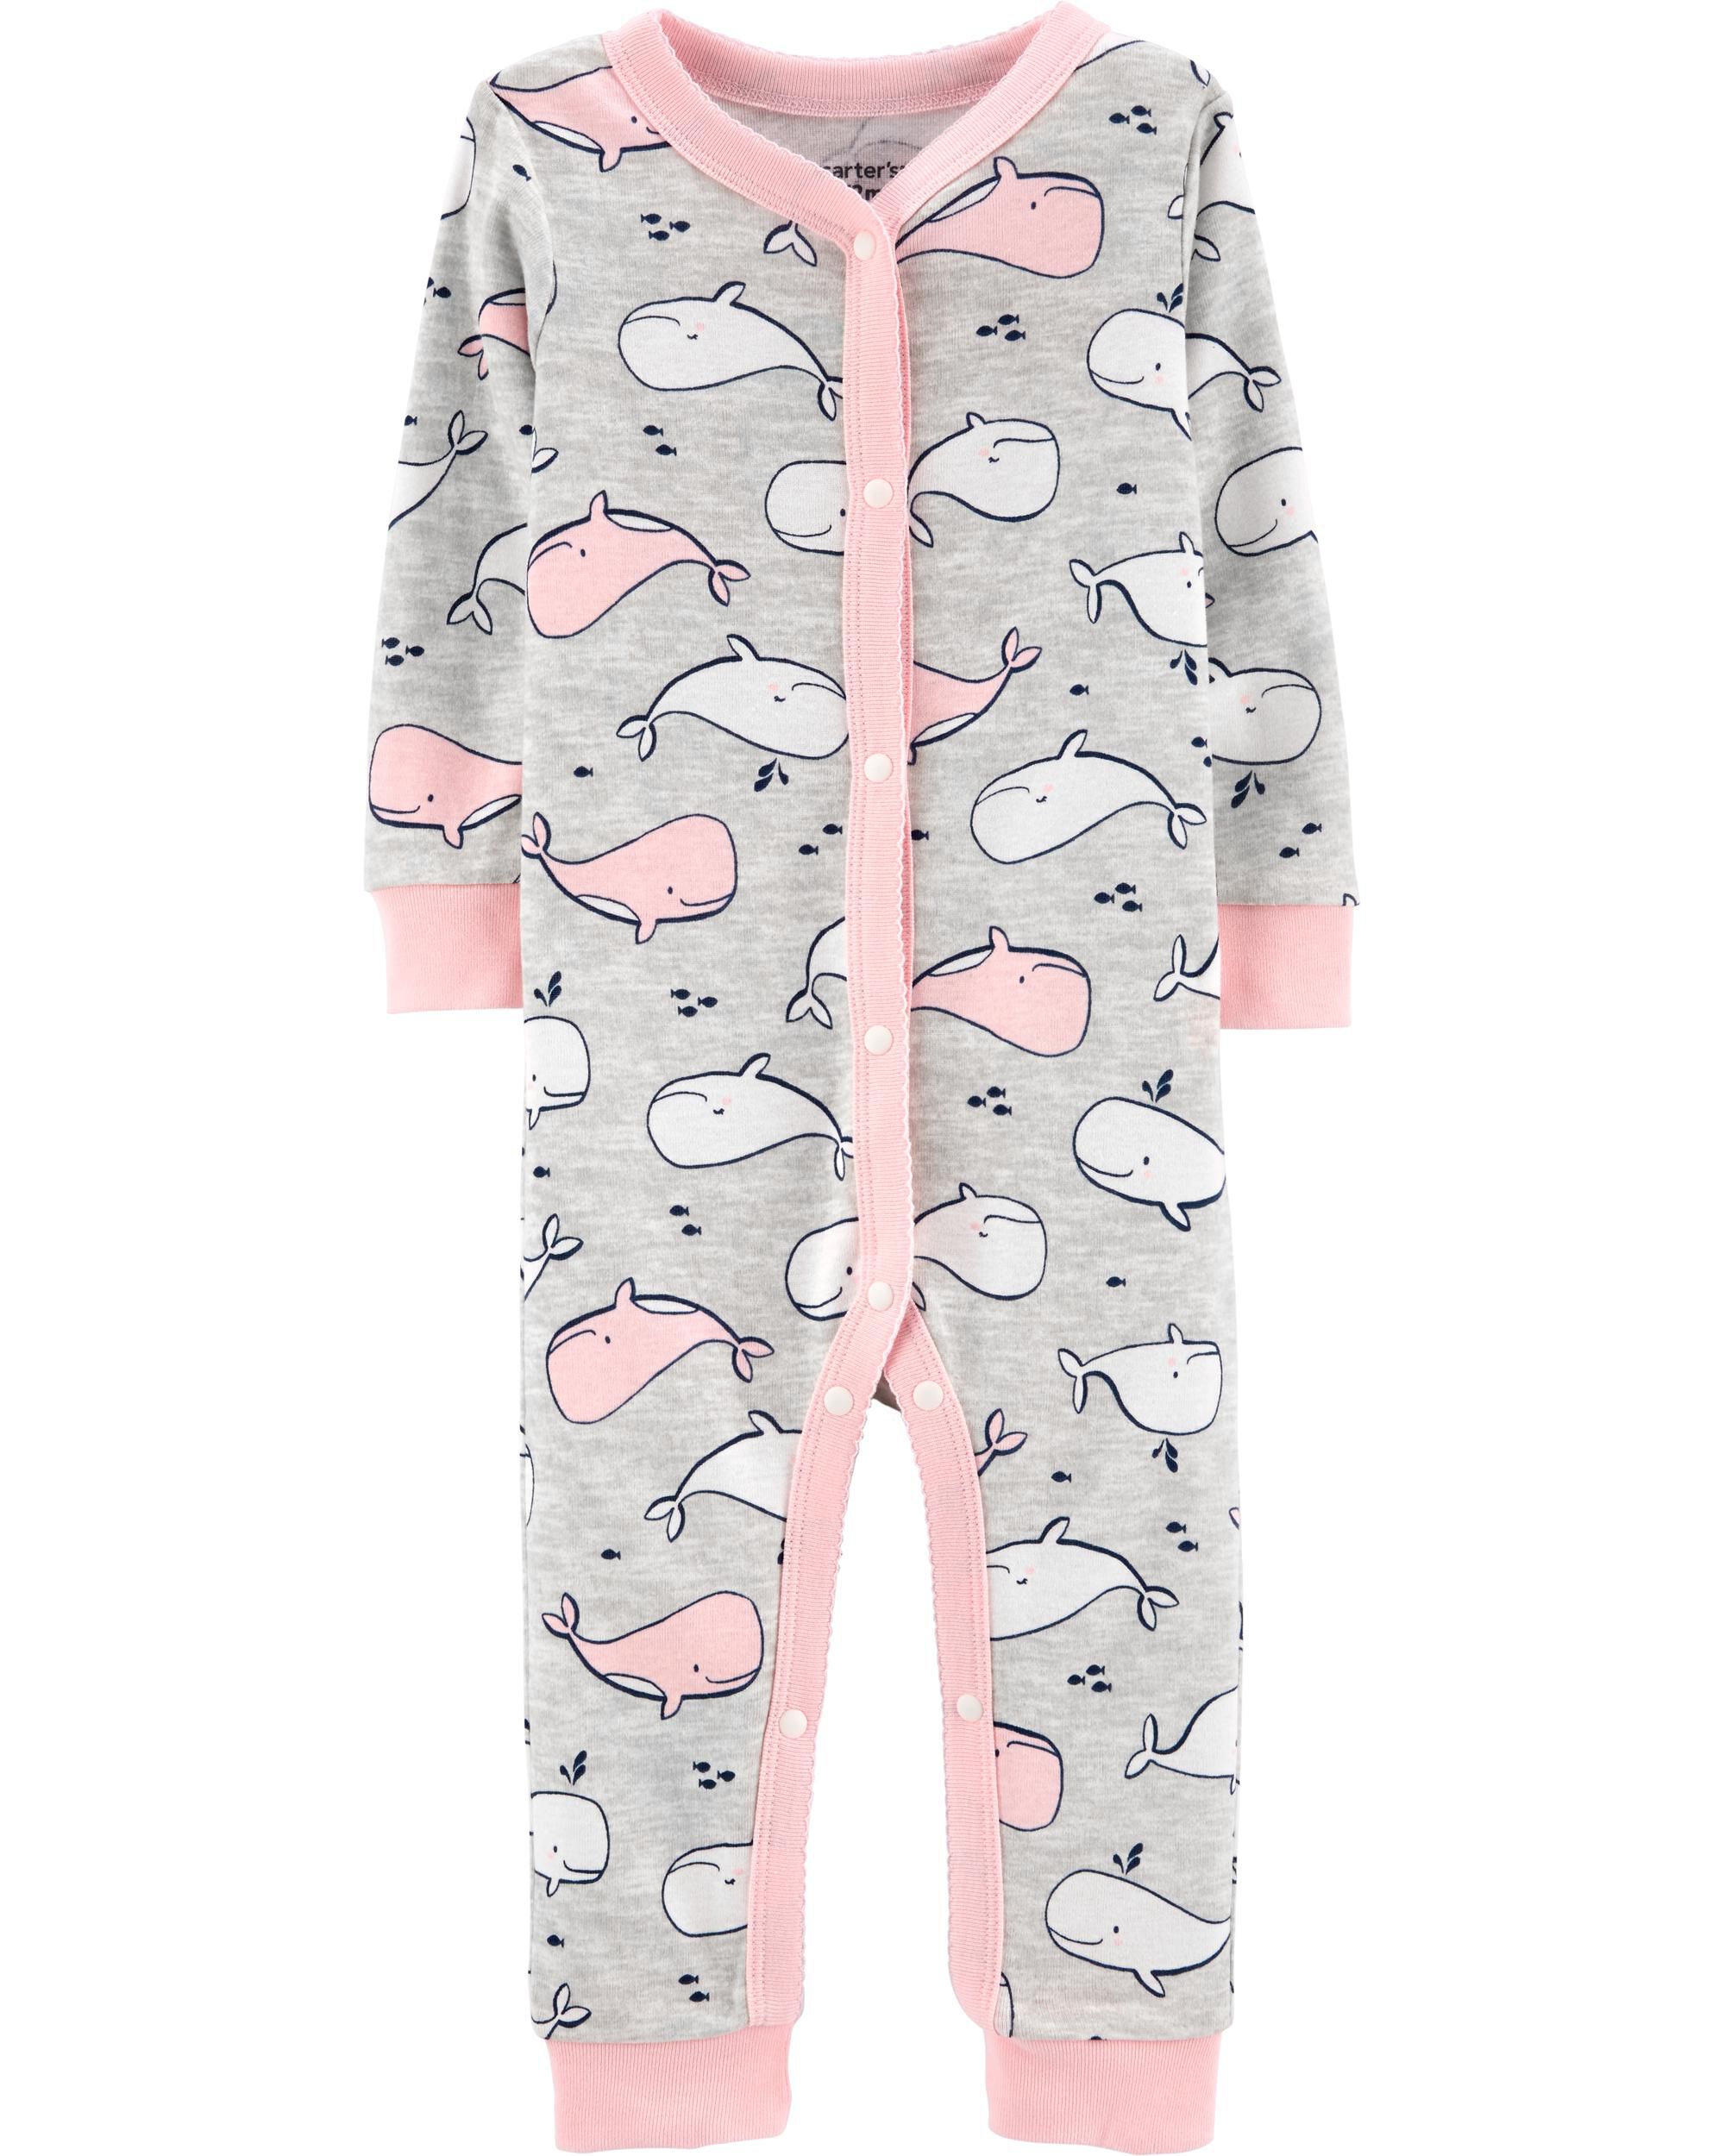 footless baby pajamas